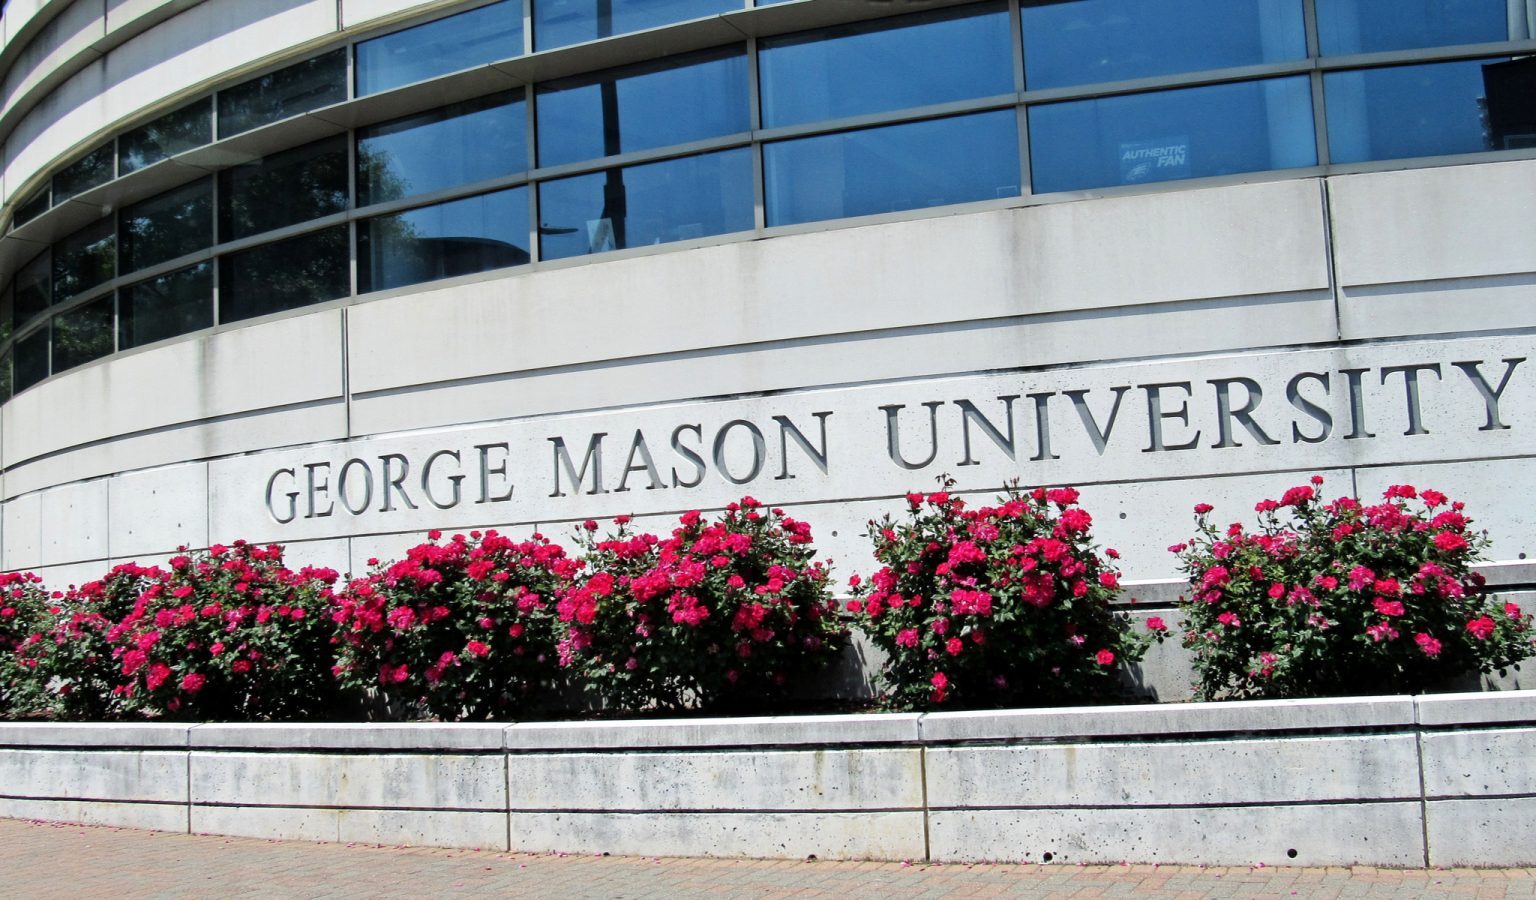 george mason university